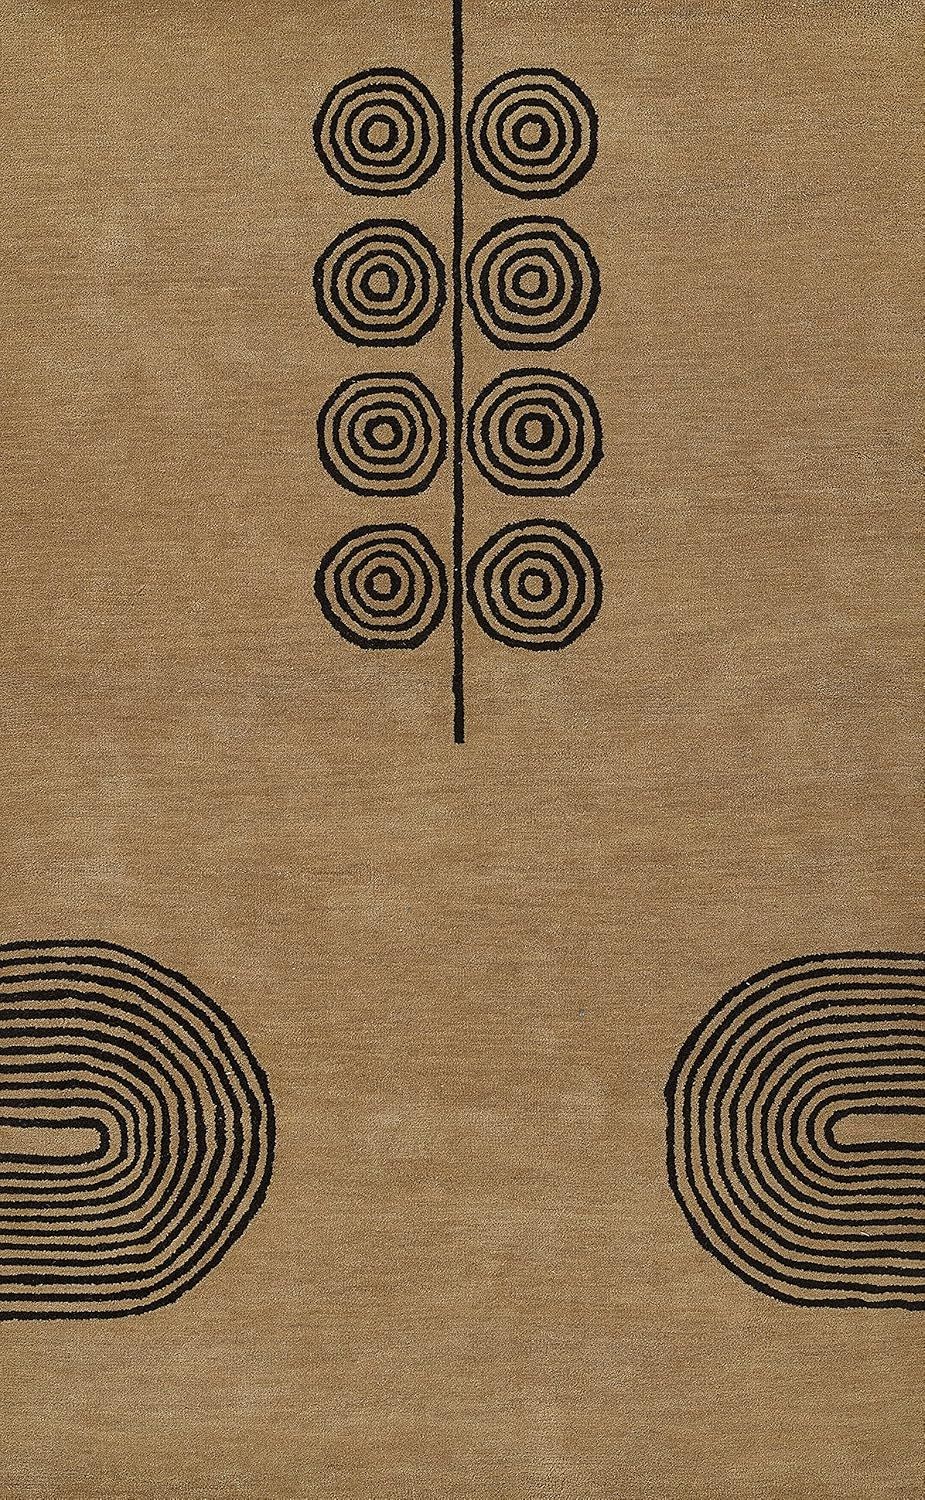 Momeni Simba Wool with Cotton and Latex Backing Area Rug, Beige, 9' X 12' | Amazon (US)